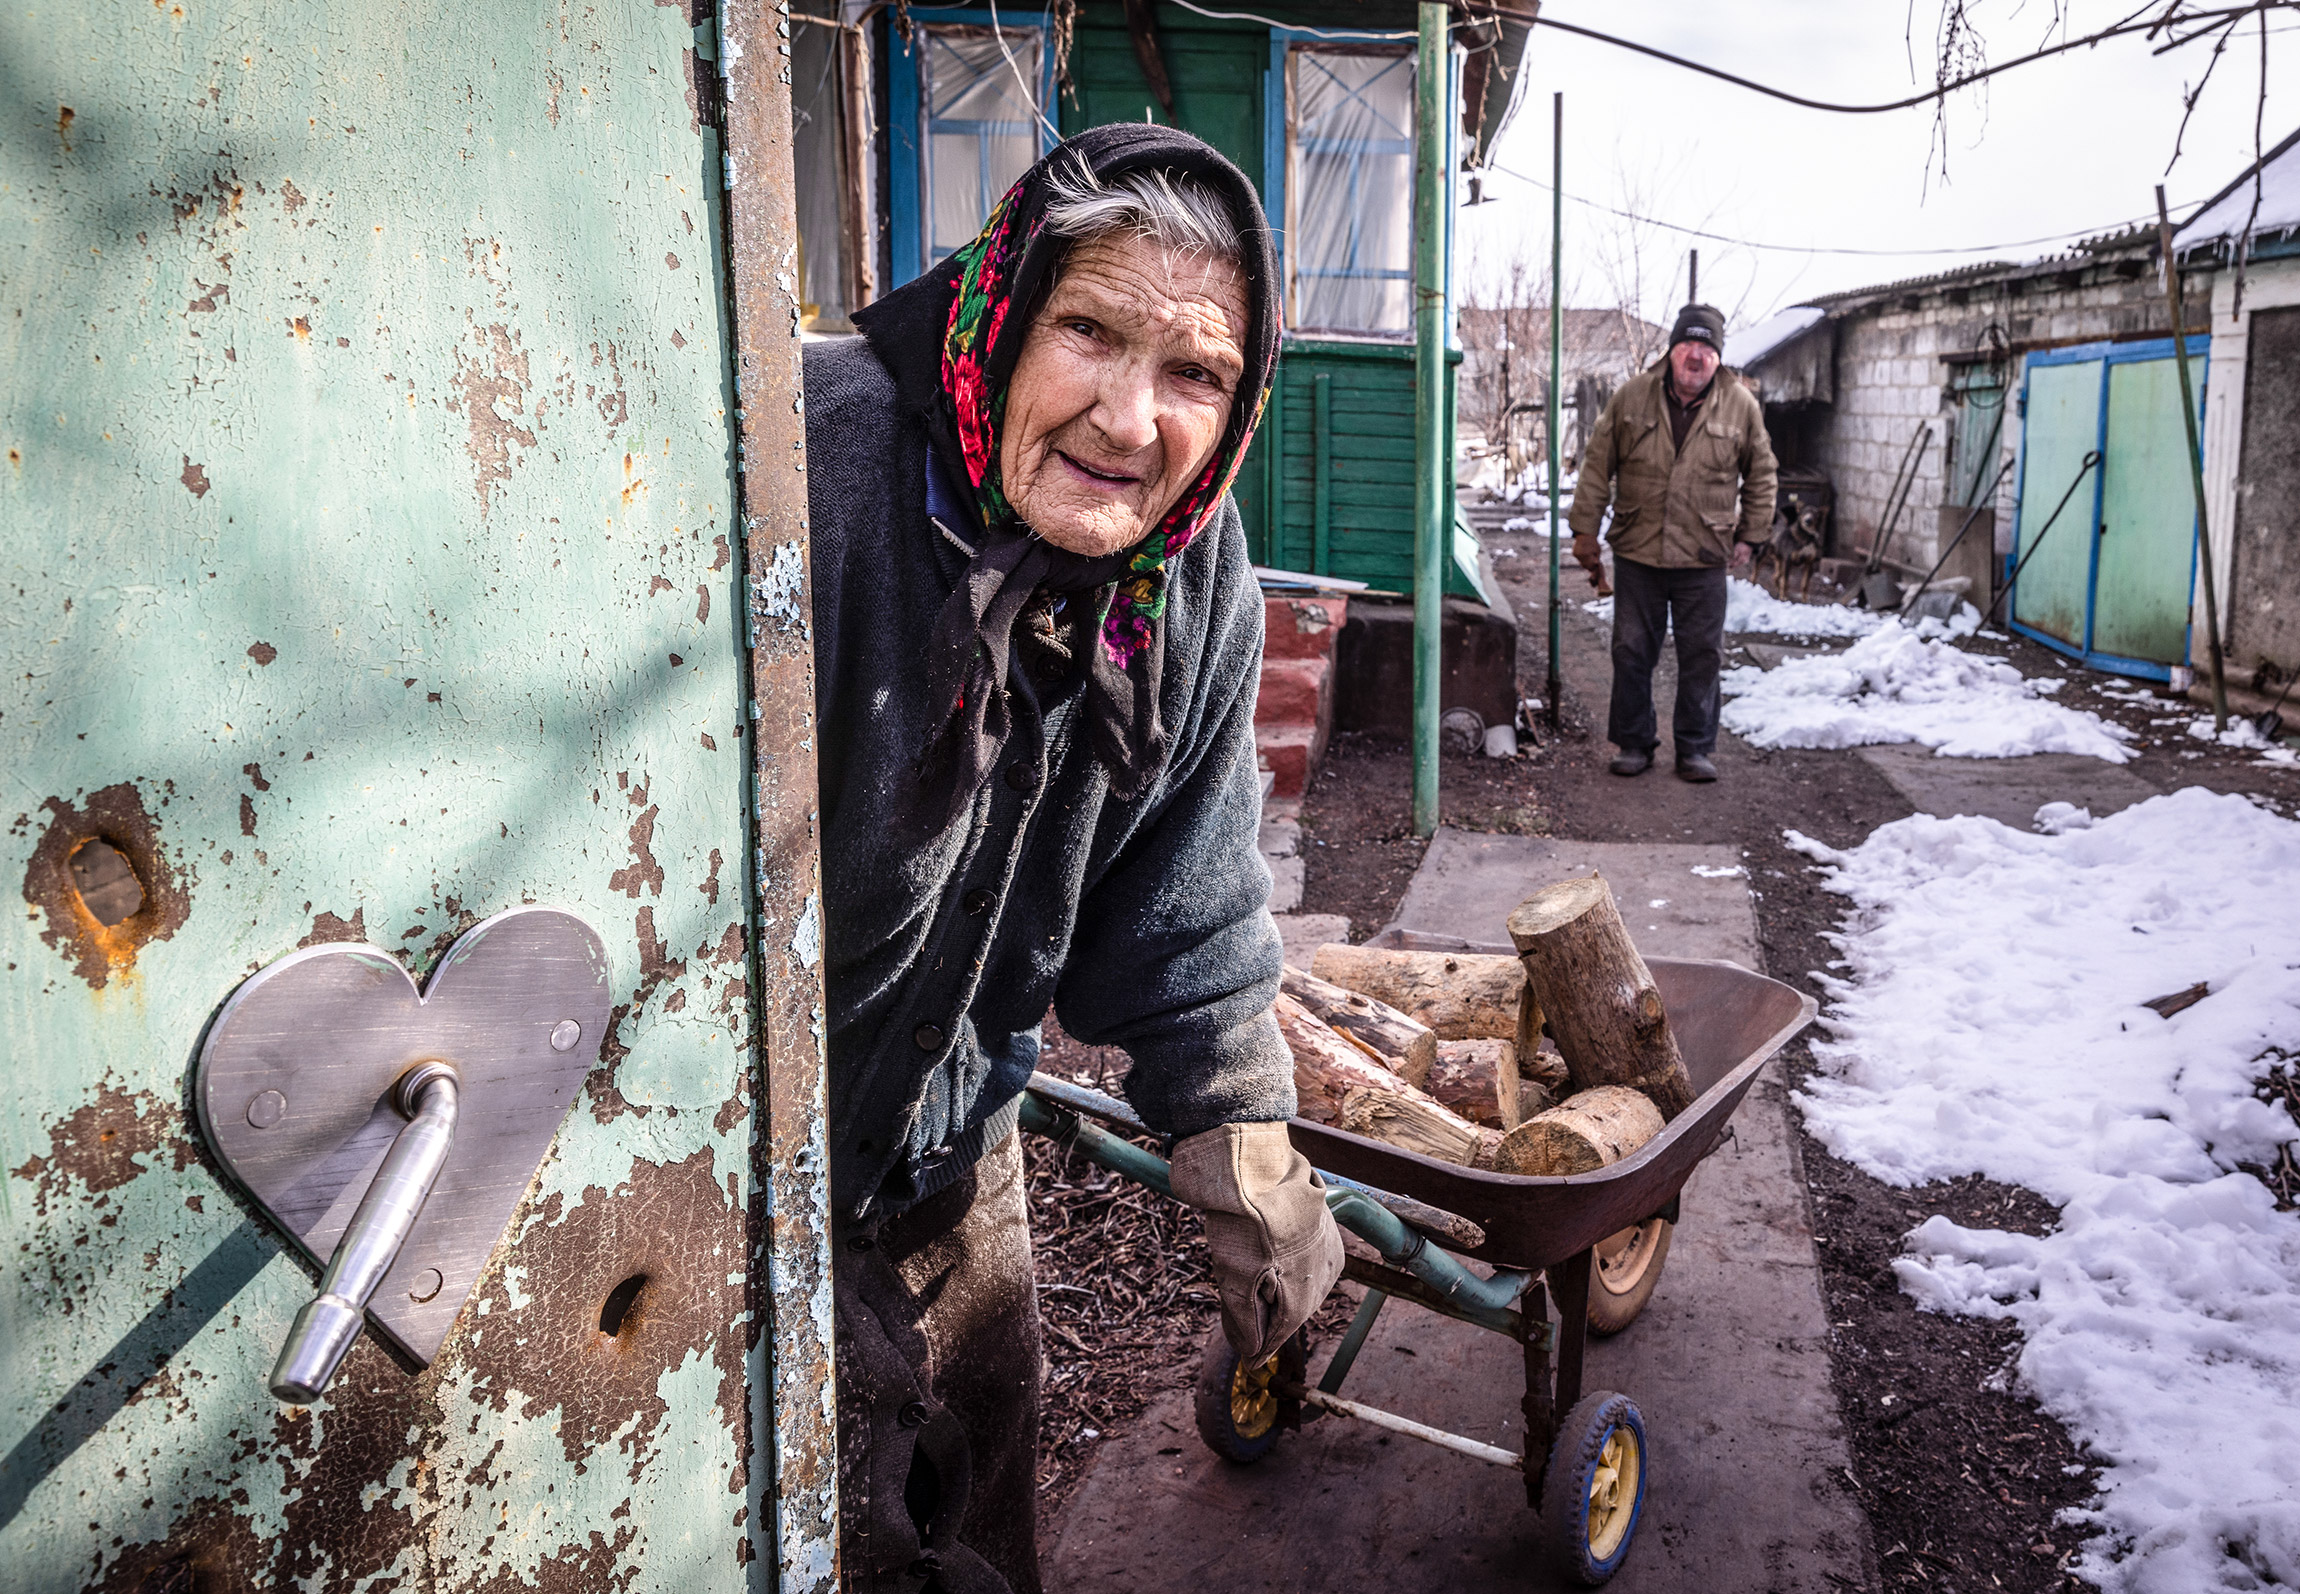 Жительница села Трехизбенка, Луганская область. С конца февраля населенный пункт контролируется ЛНР